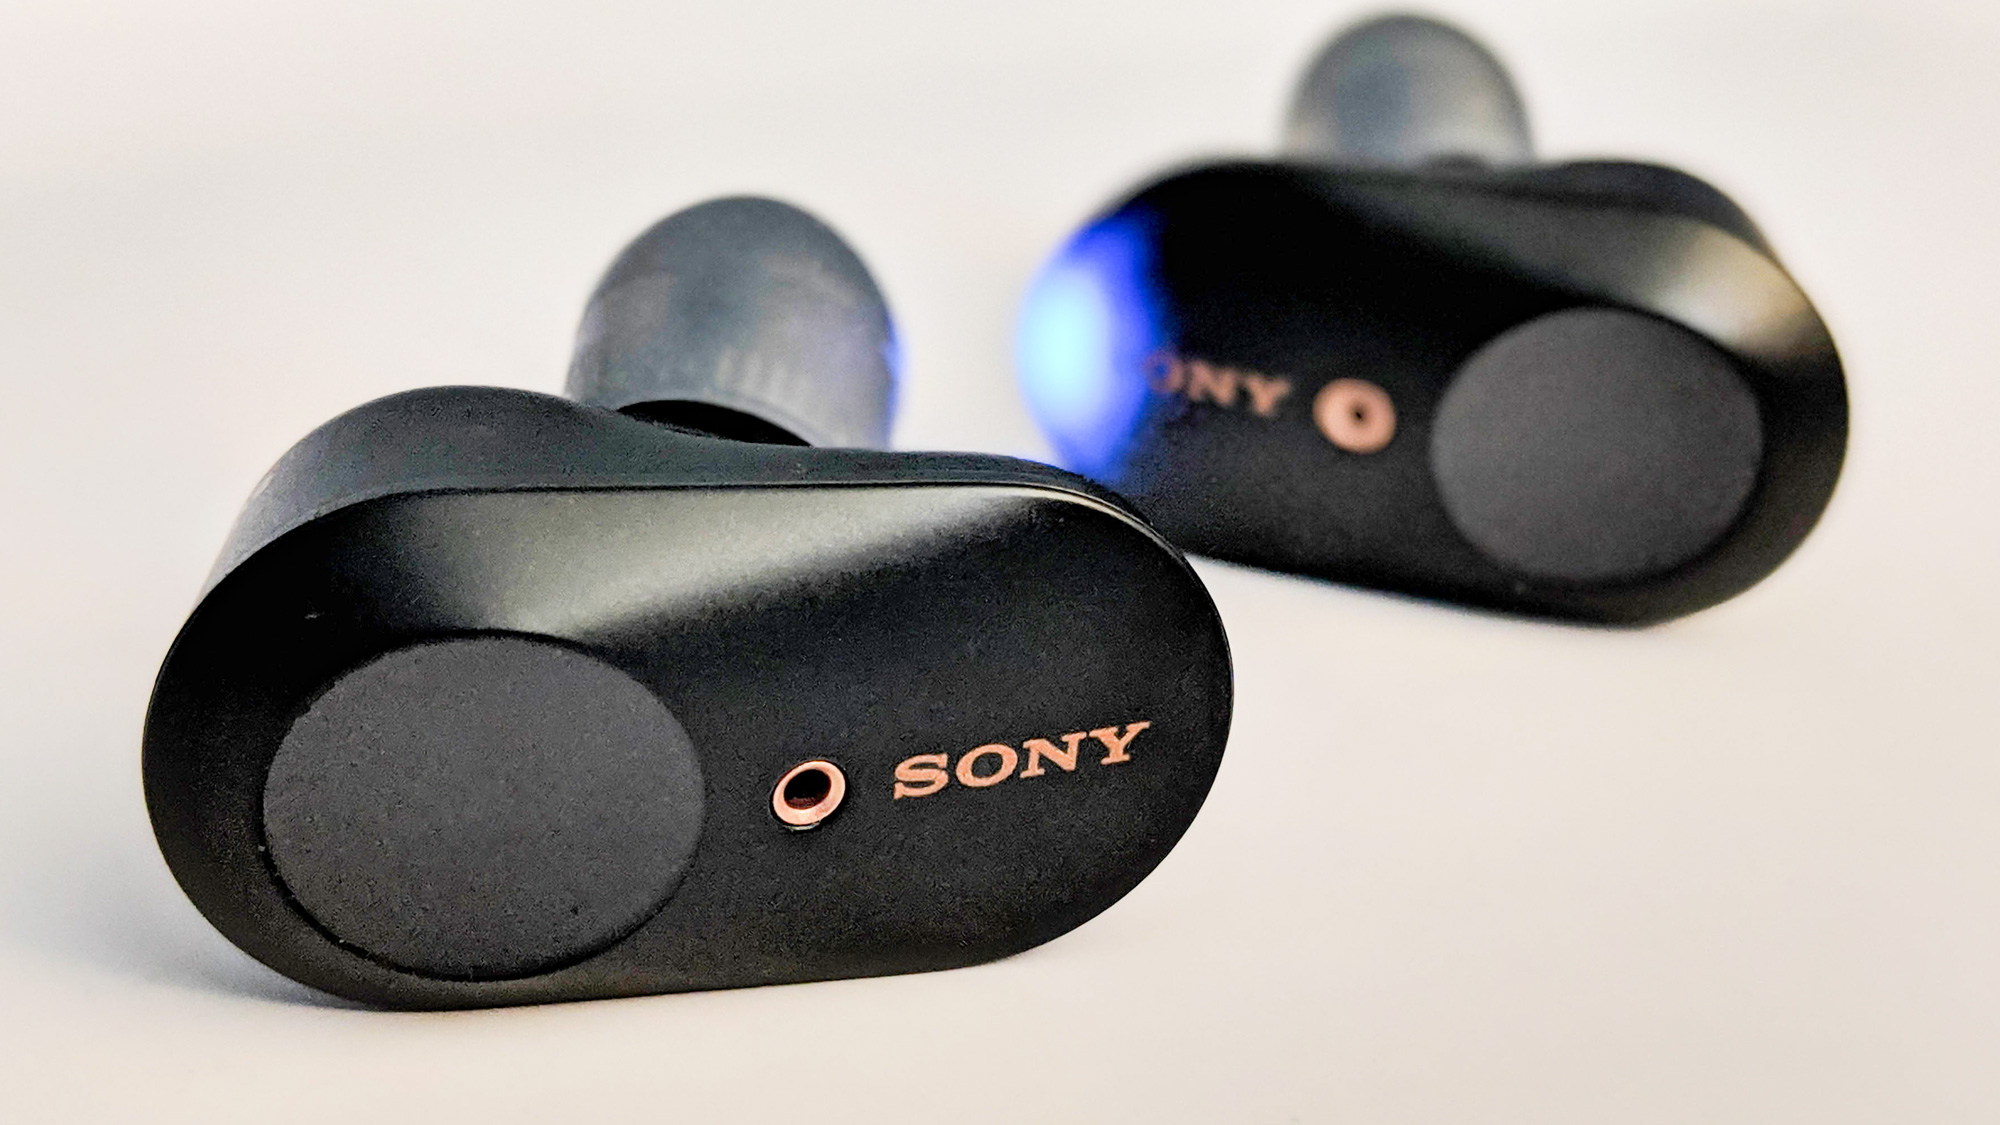 Sony Wf-1000Xm3 : Sony WF-1000XM3 review - SoundGuys : It's a totally